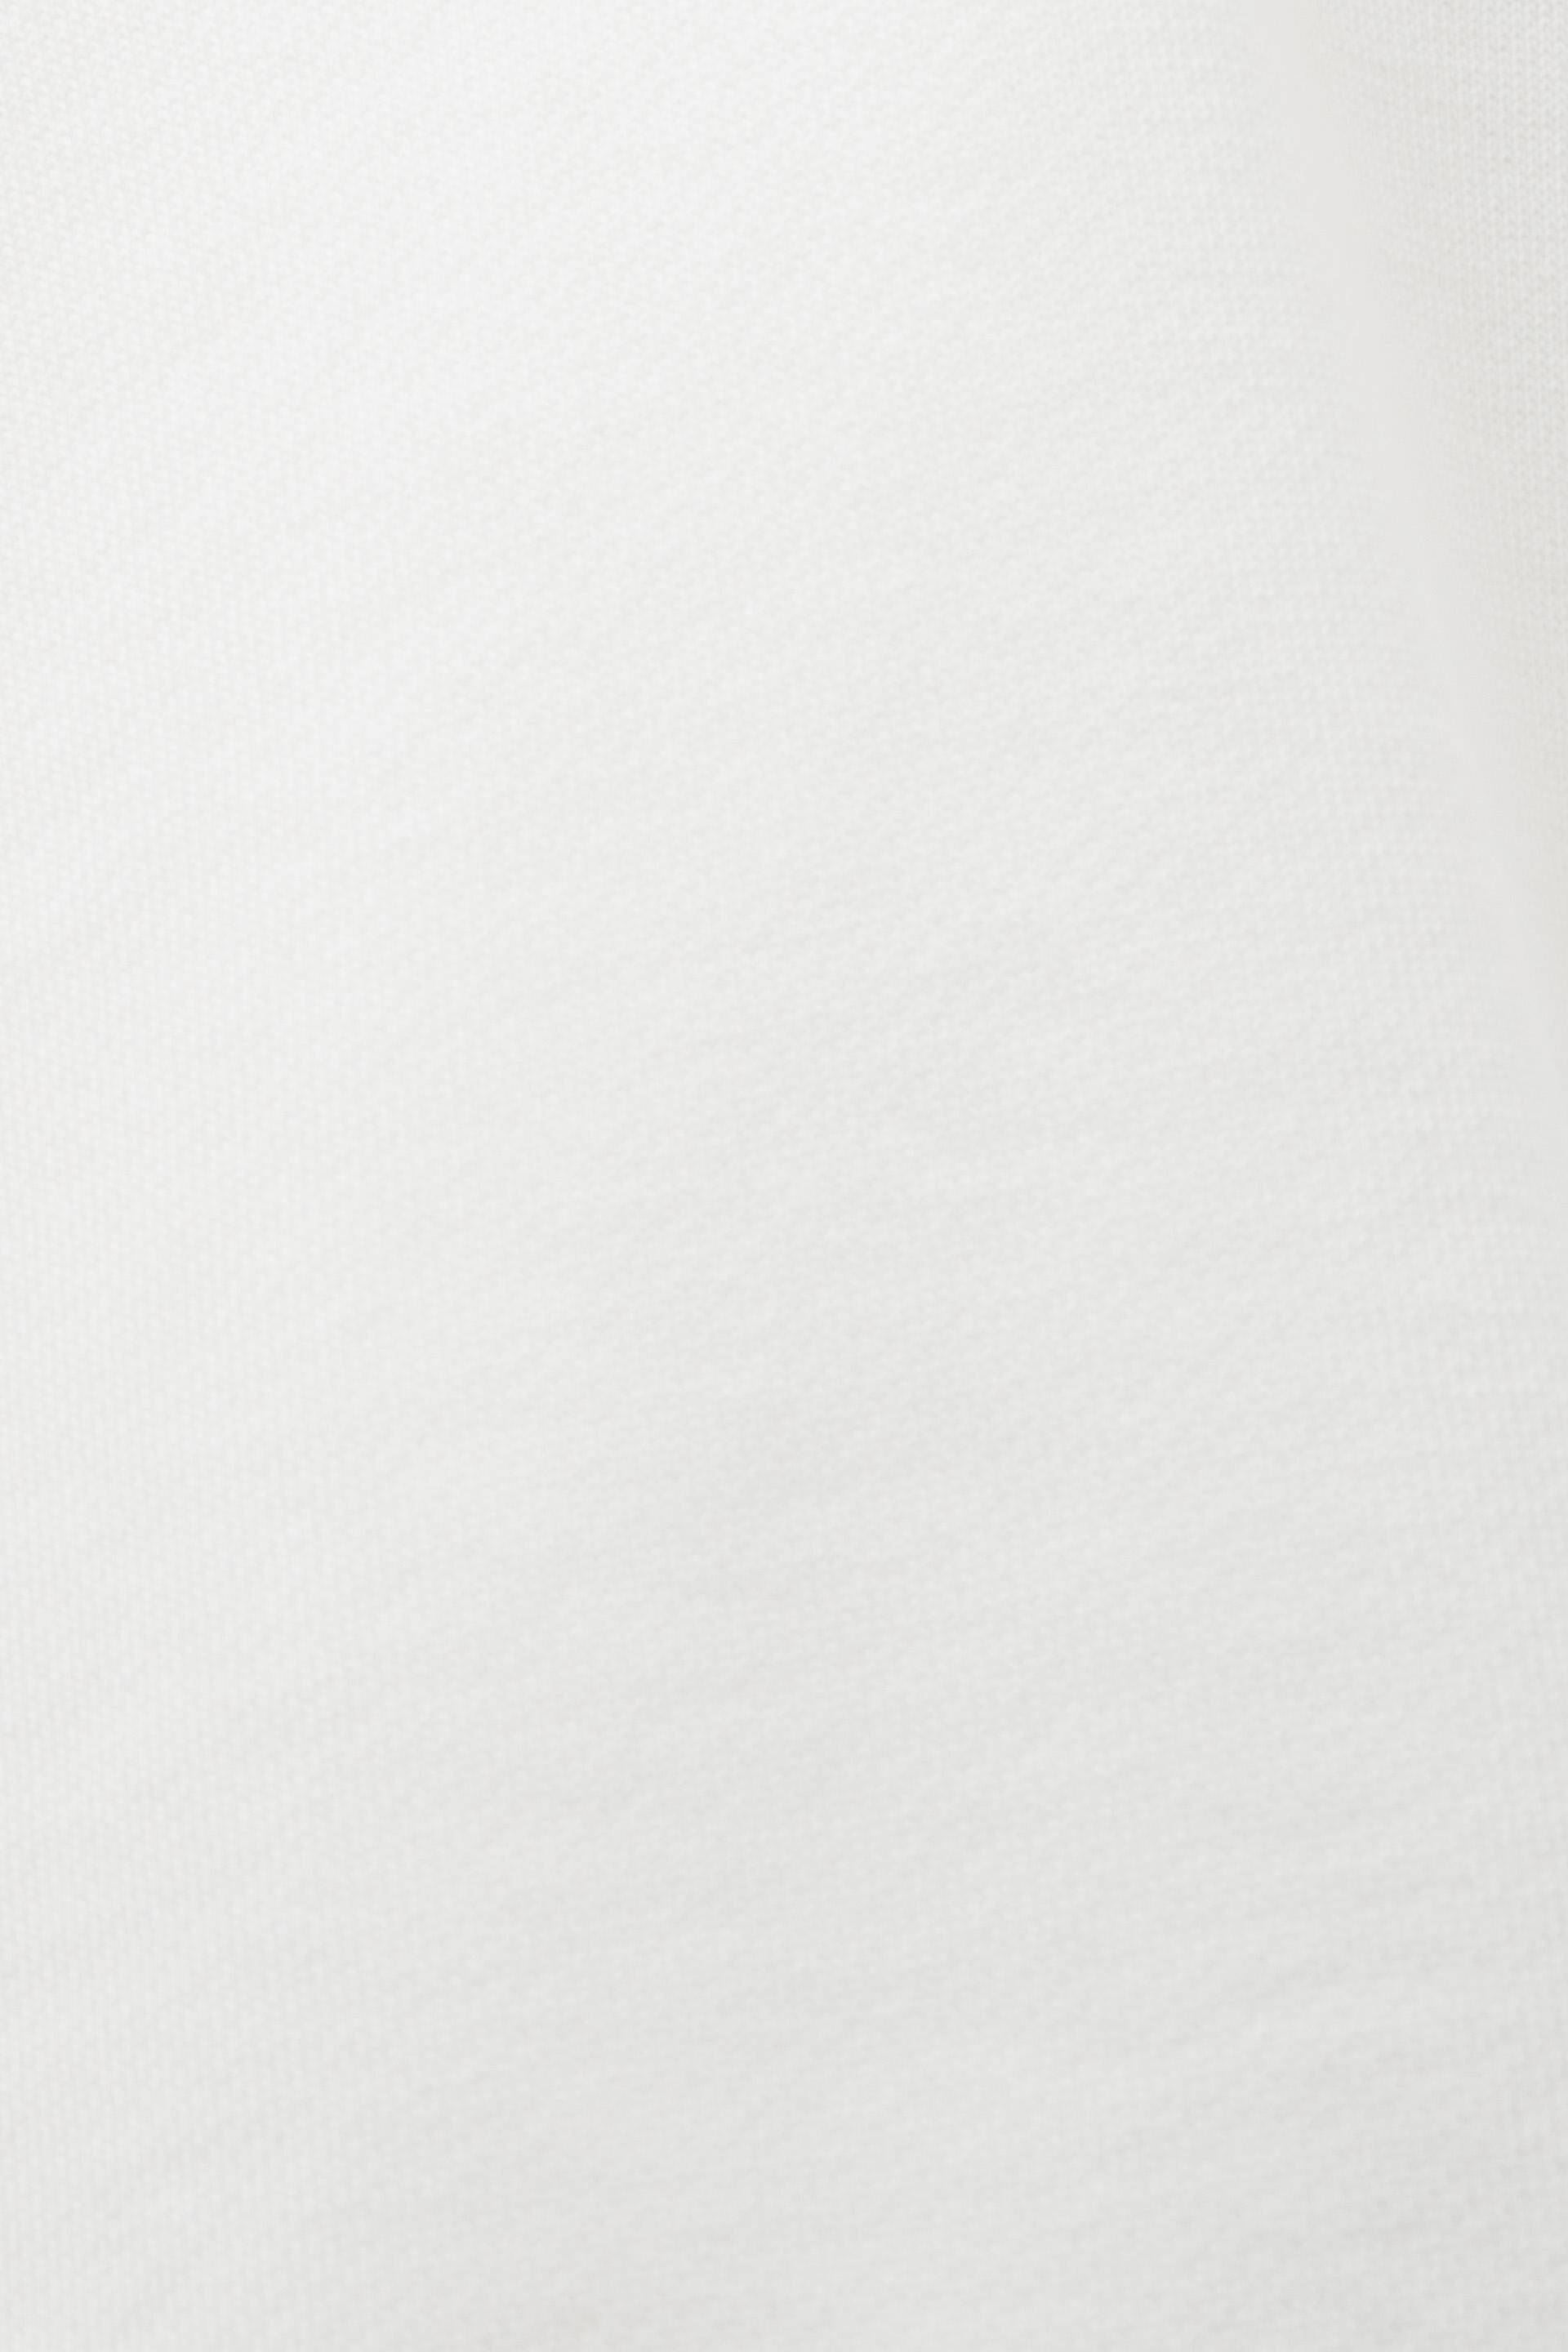 Esprit Logo, Bio-Baumwolle mit aufgesticktem Kapuzenpullover